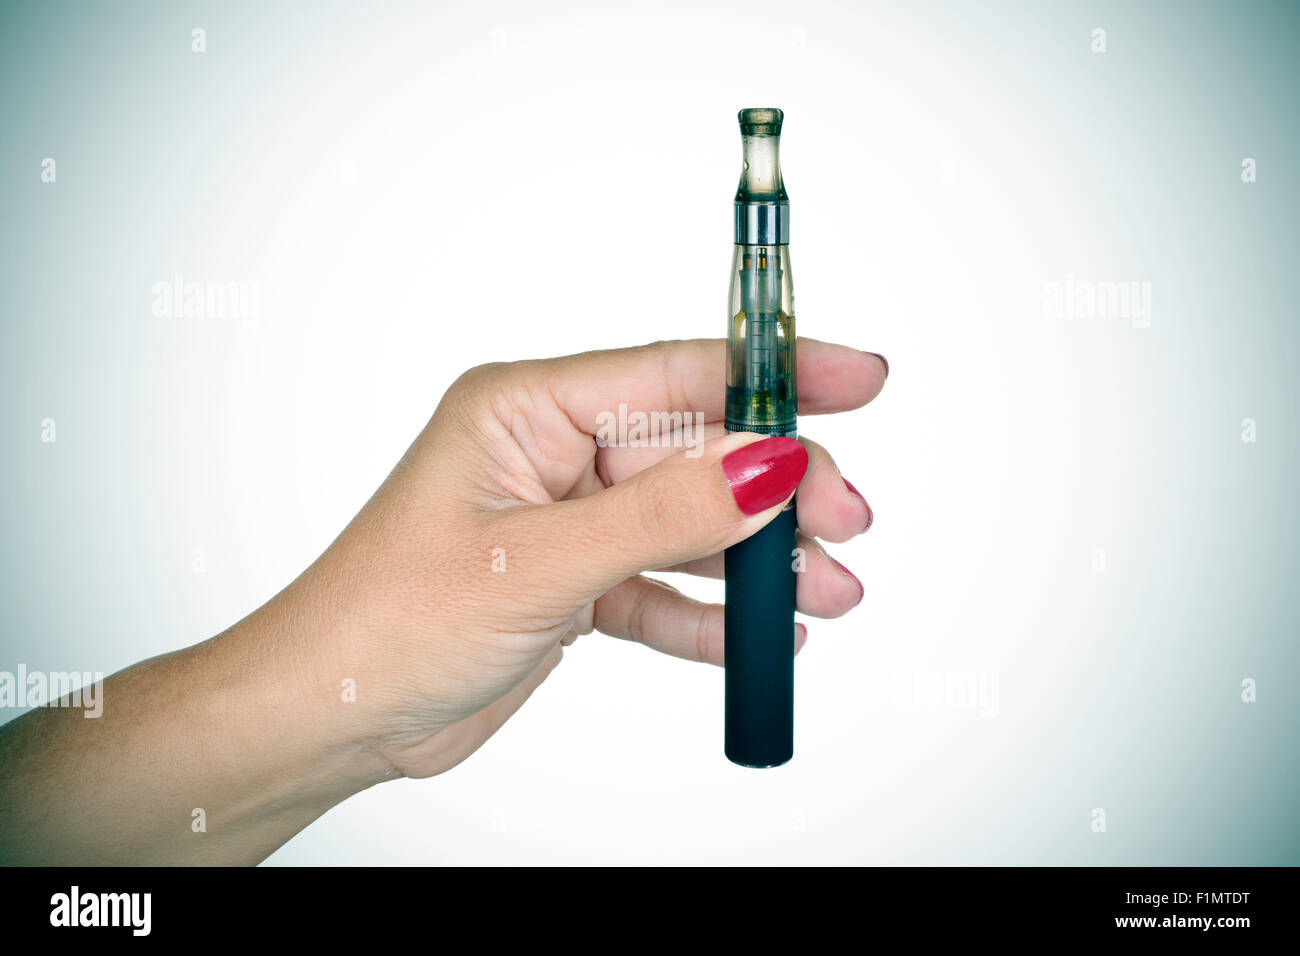 Nahaufnahme der Hand einer jungen Frau zeigt eine elektronische Zigarette, leichte Vignette hinzugefügt Stockfoto